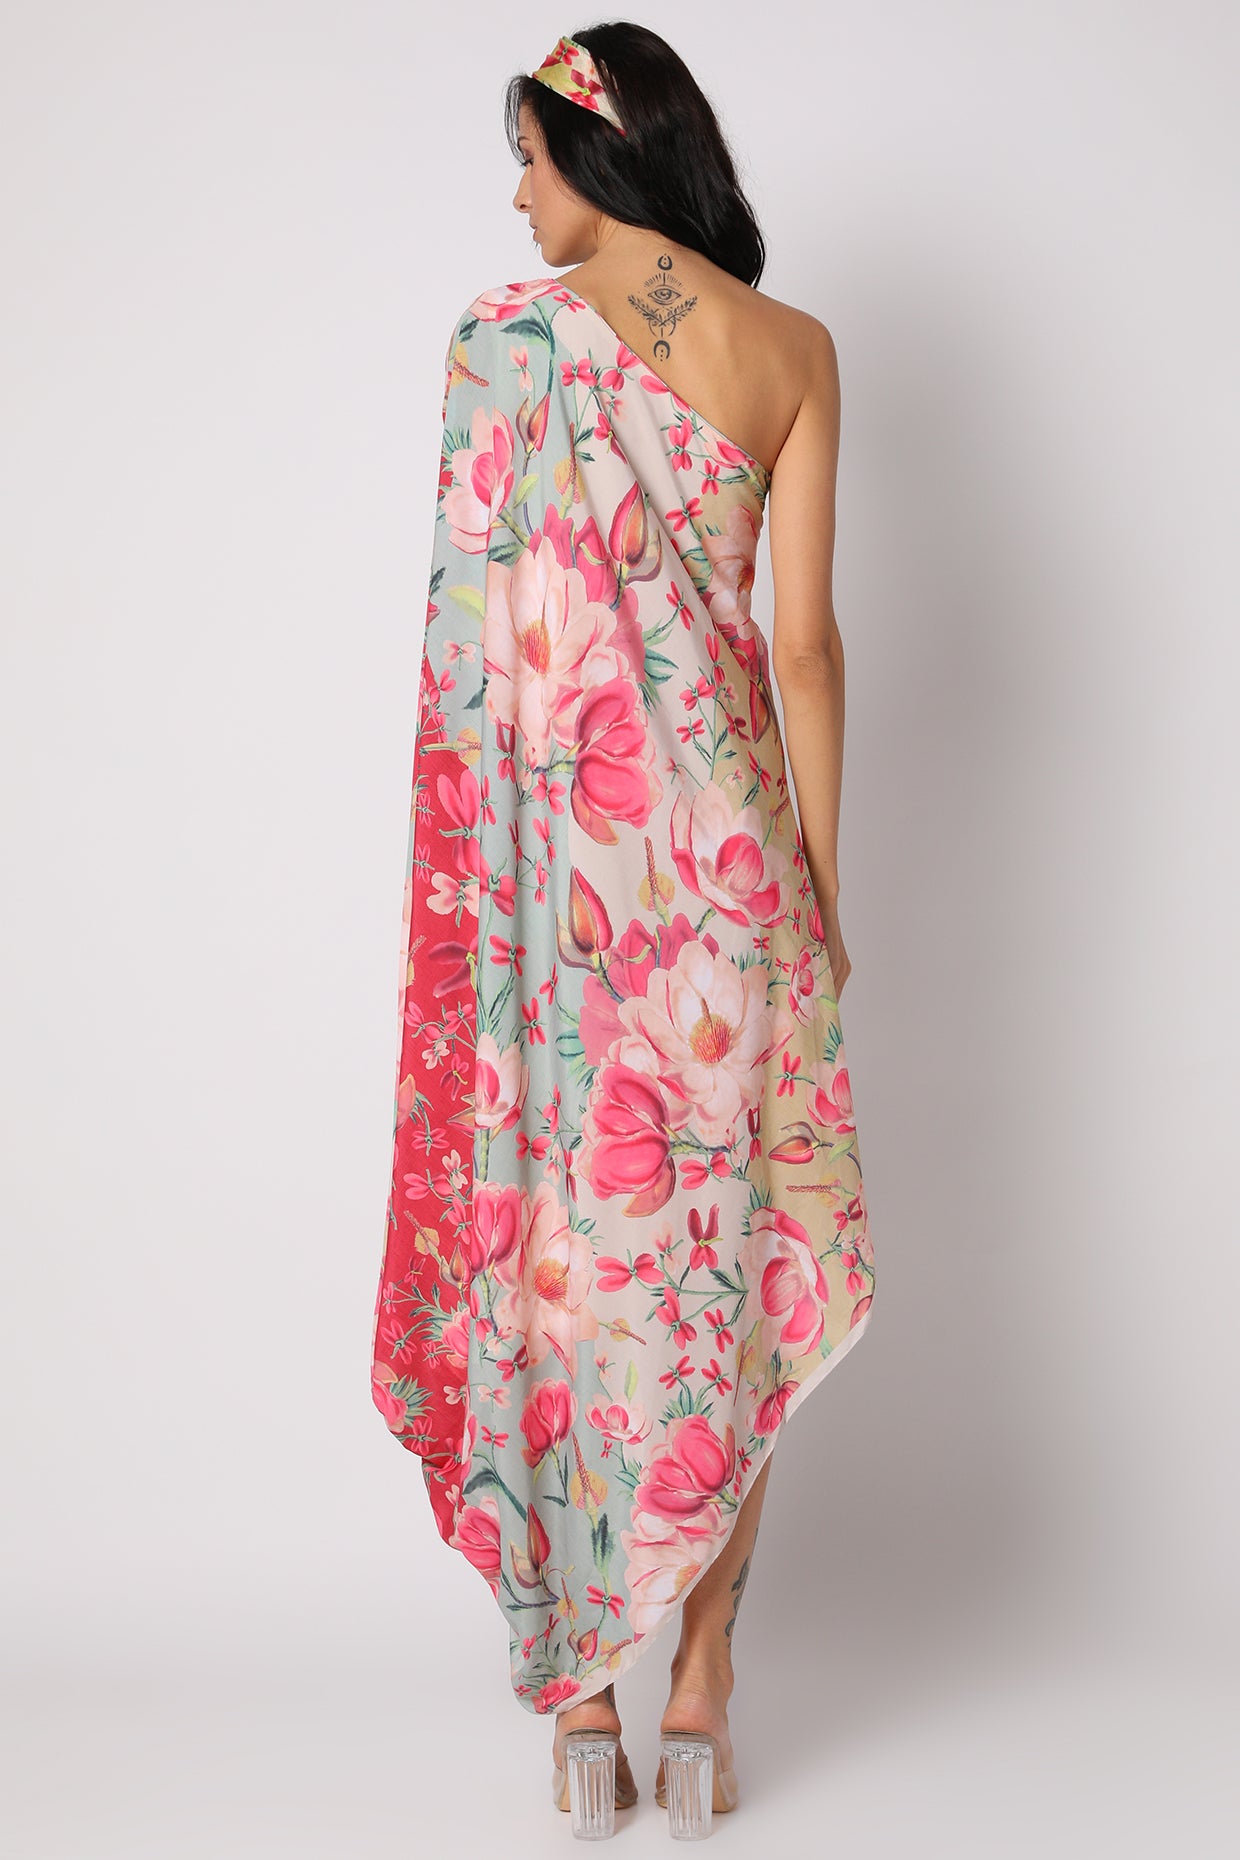 gopi vaid Khushi One Shoulder Dress with Belt pink online shopping melange singapore indian designer wear